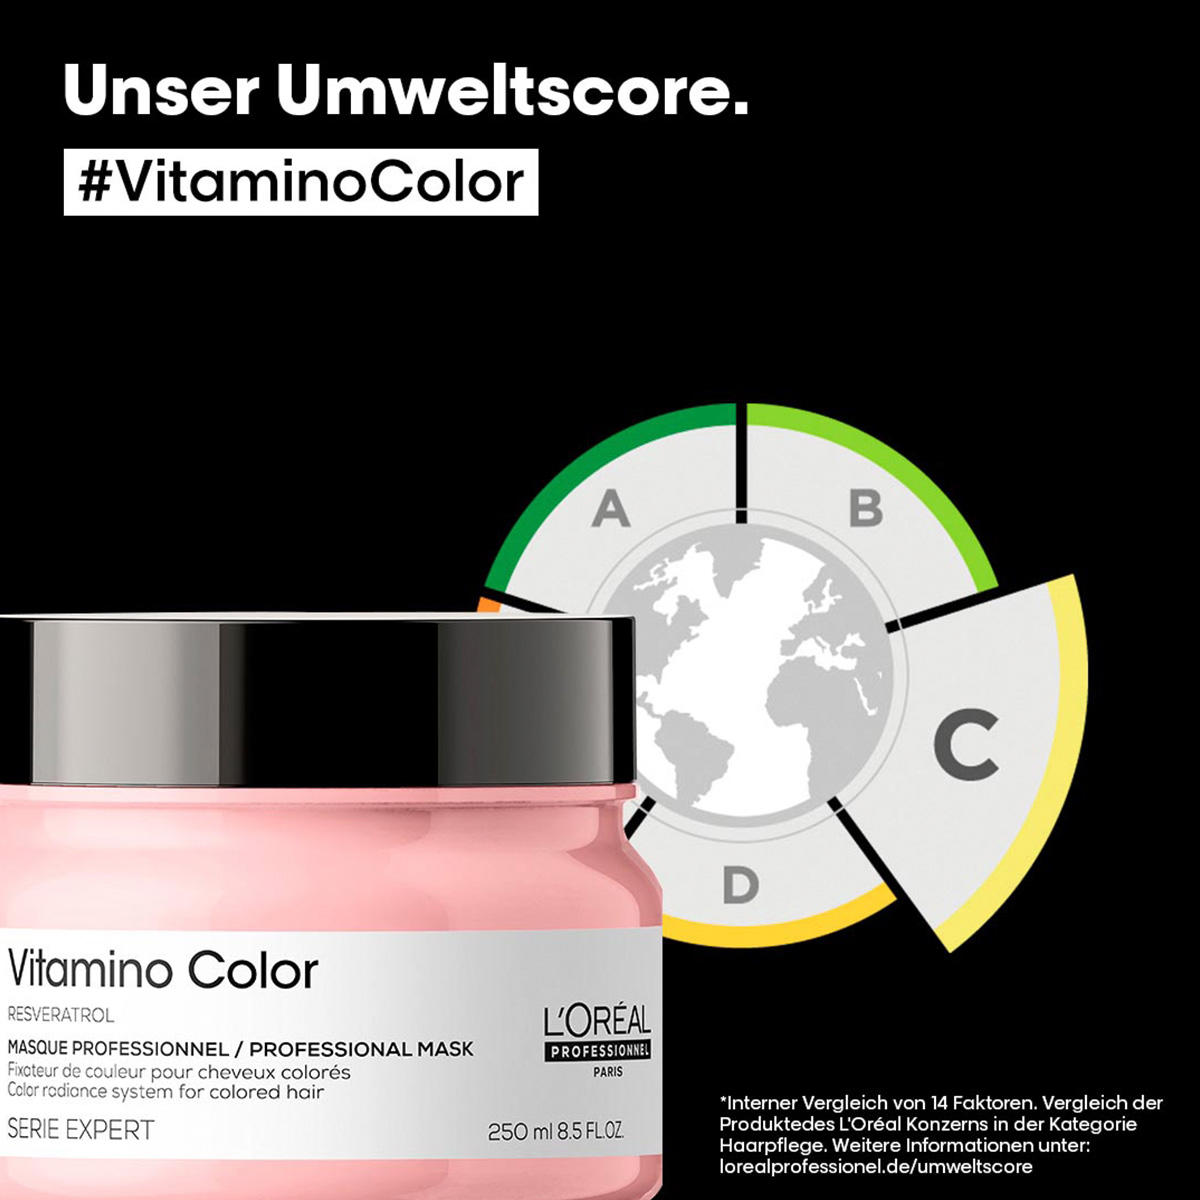 L'Oréal Professionnel Paris Serie Expert Vitamino Color Professional Mask 250 ml - 6